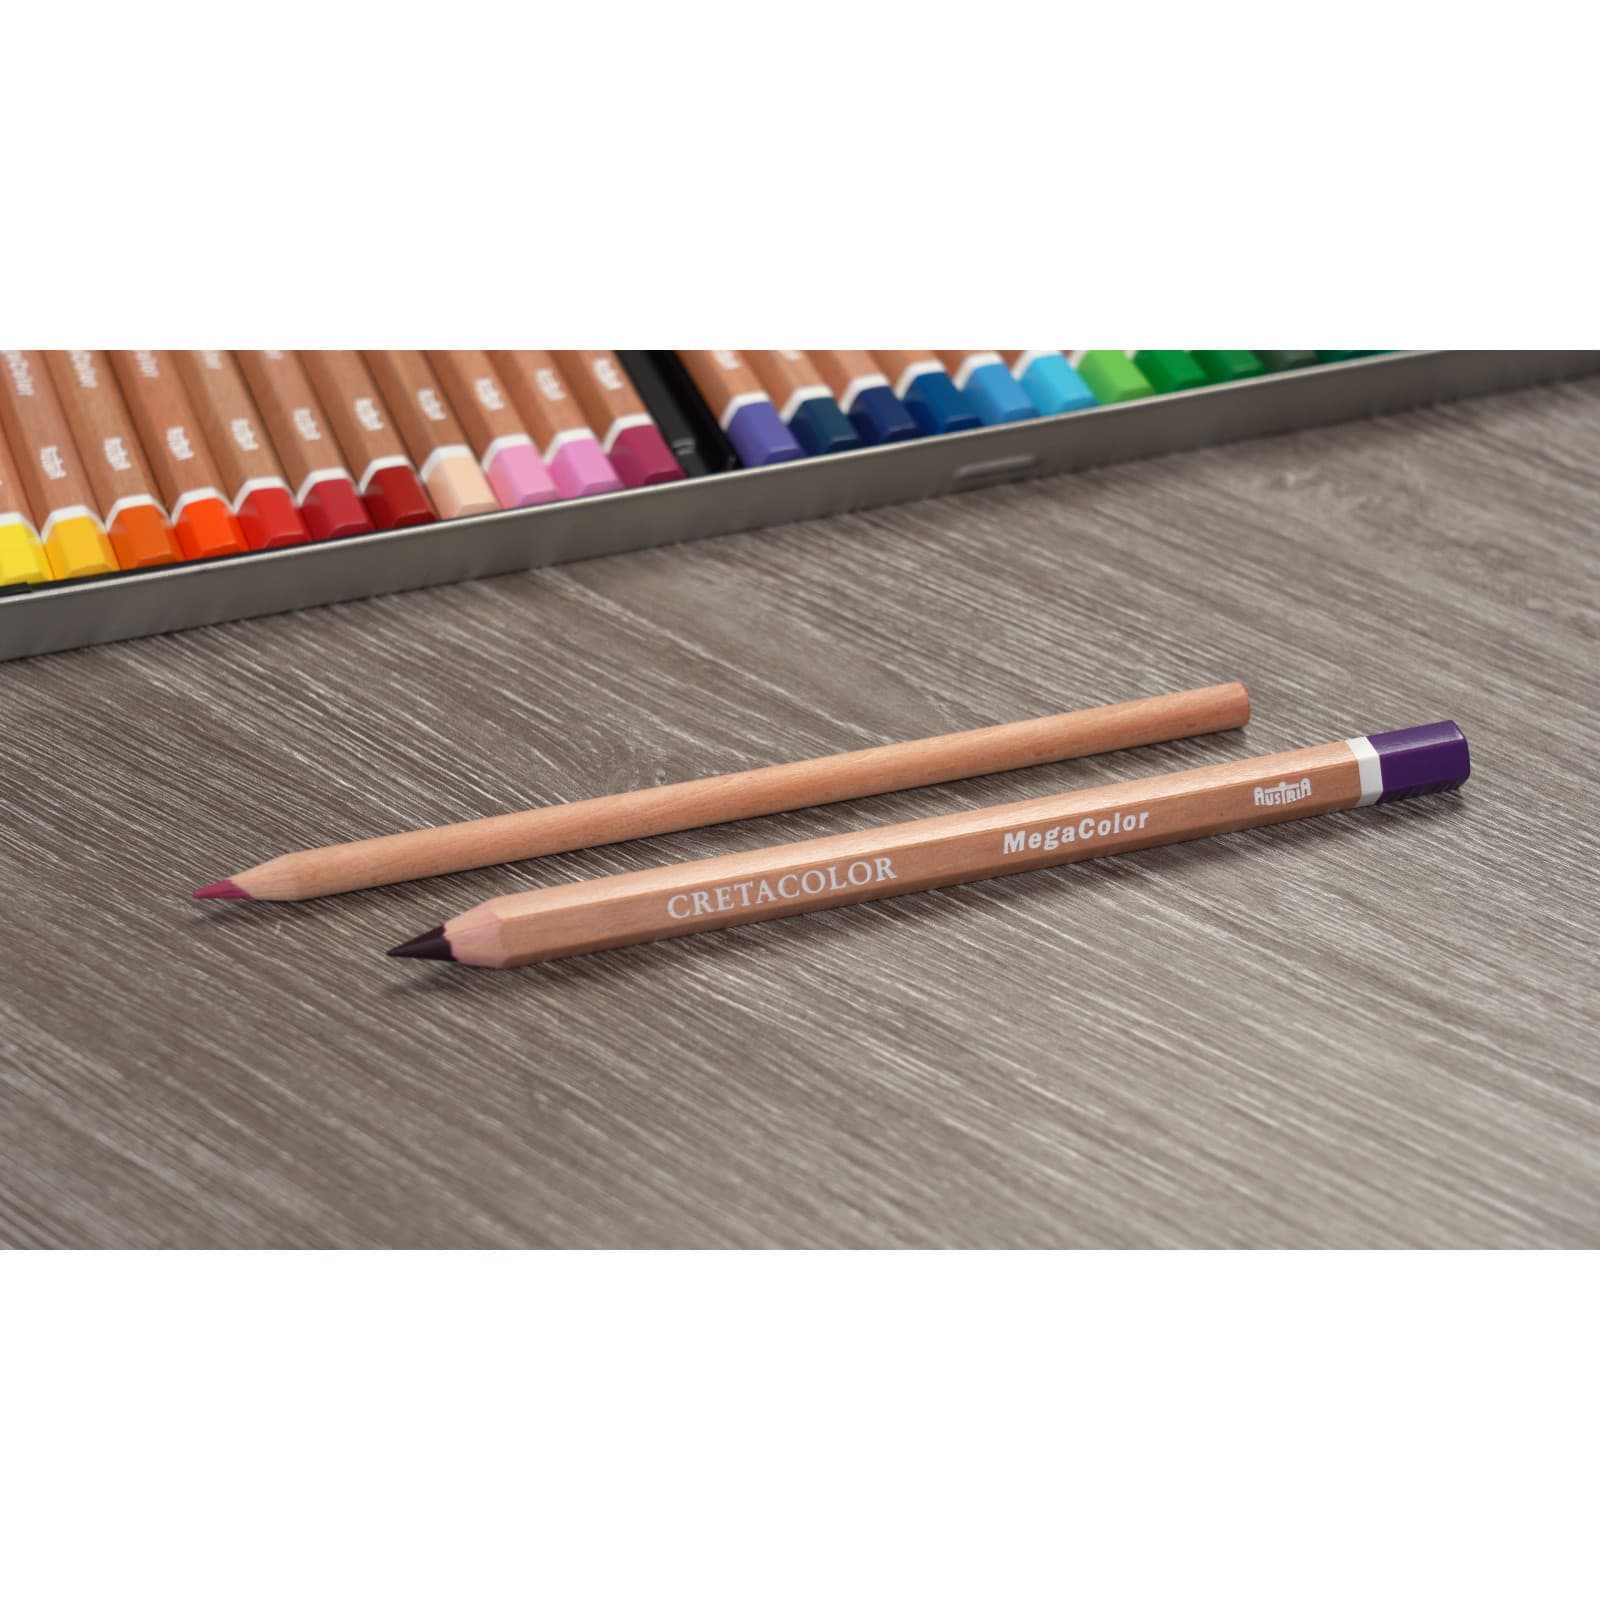 Cretacolor Mega Colored Pencil